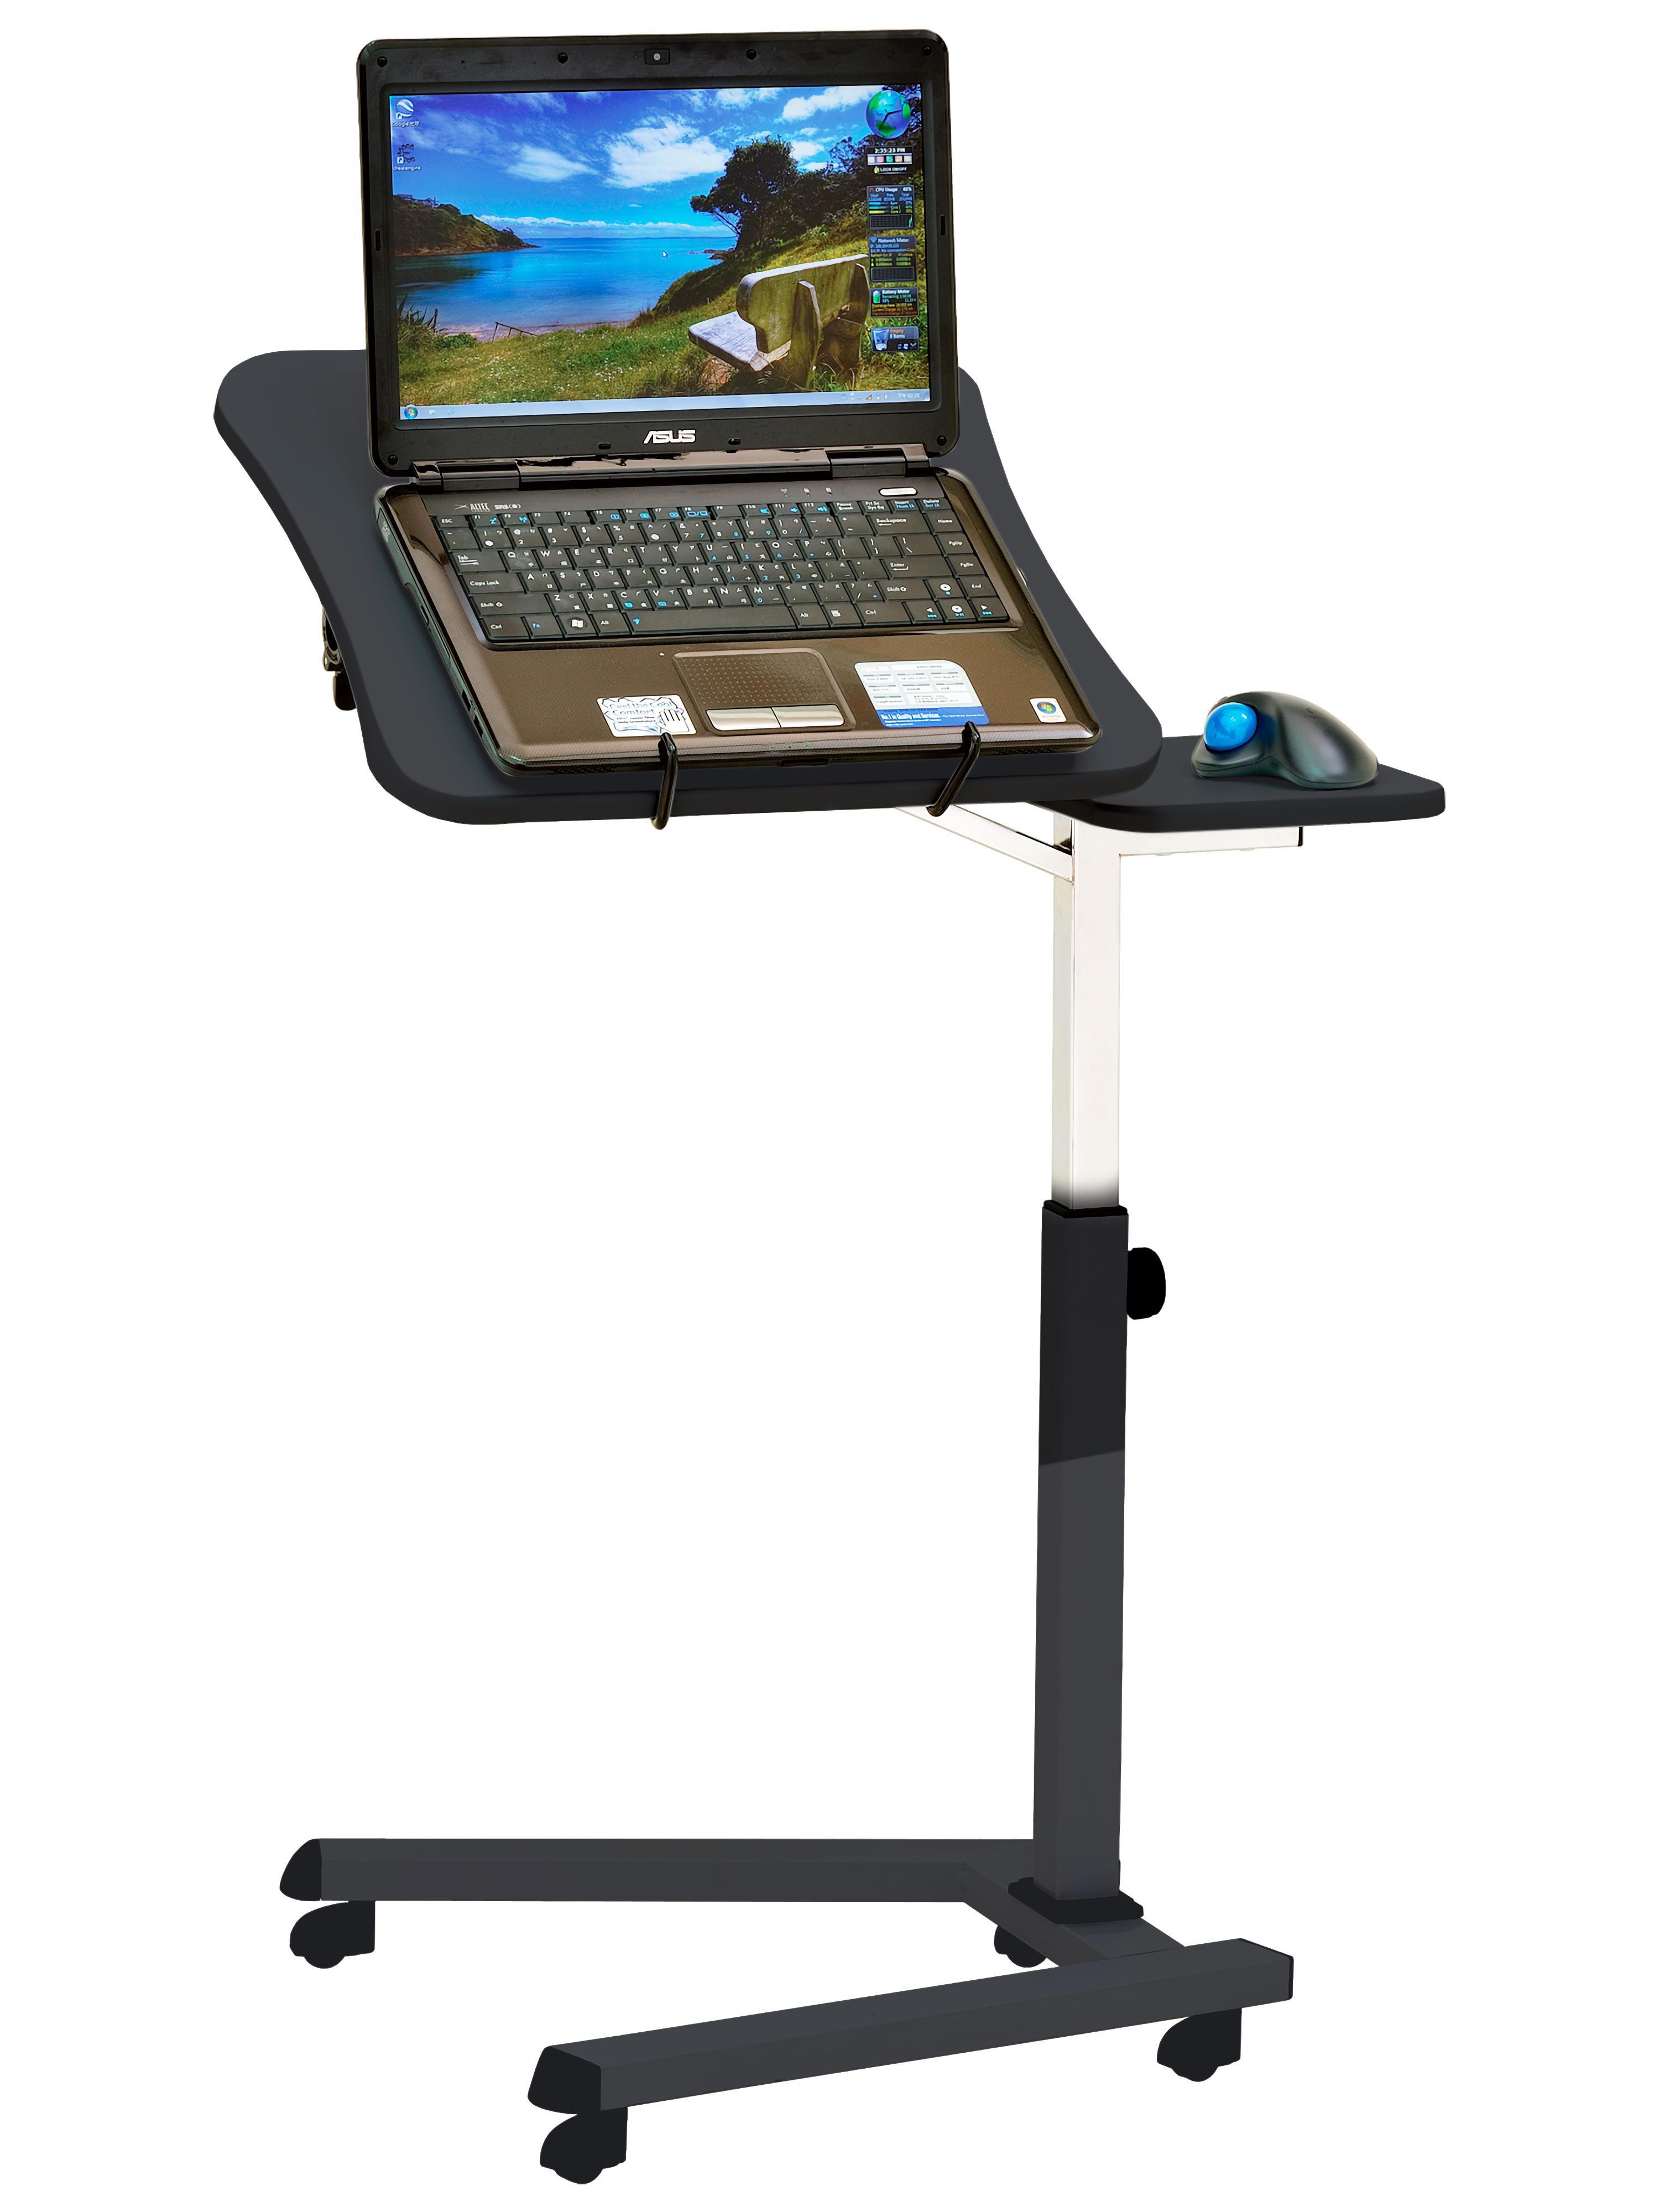 93740800 Стол ITTON для ноутбука с подставкой для мышки, на колёсиках цвет чёрный/хромированный Стол для ноутбука STLM-0564028 UNISTOR